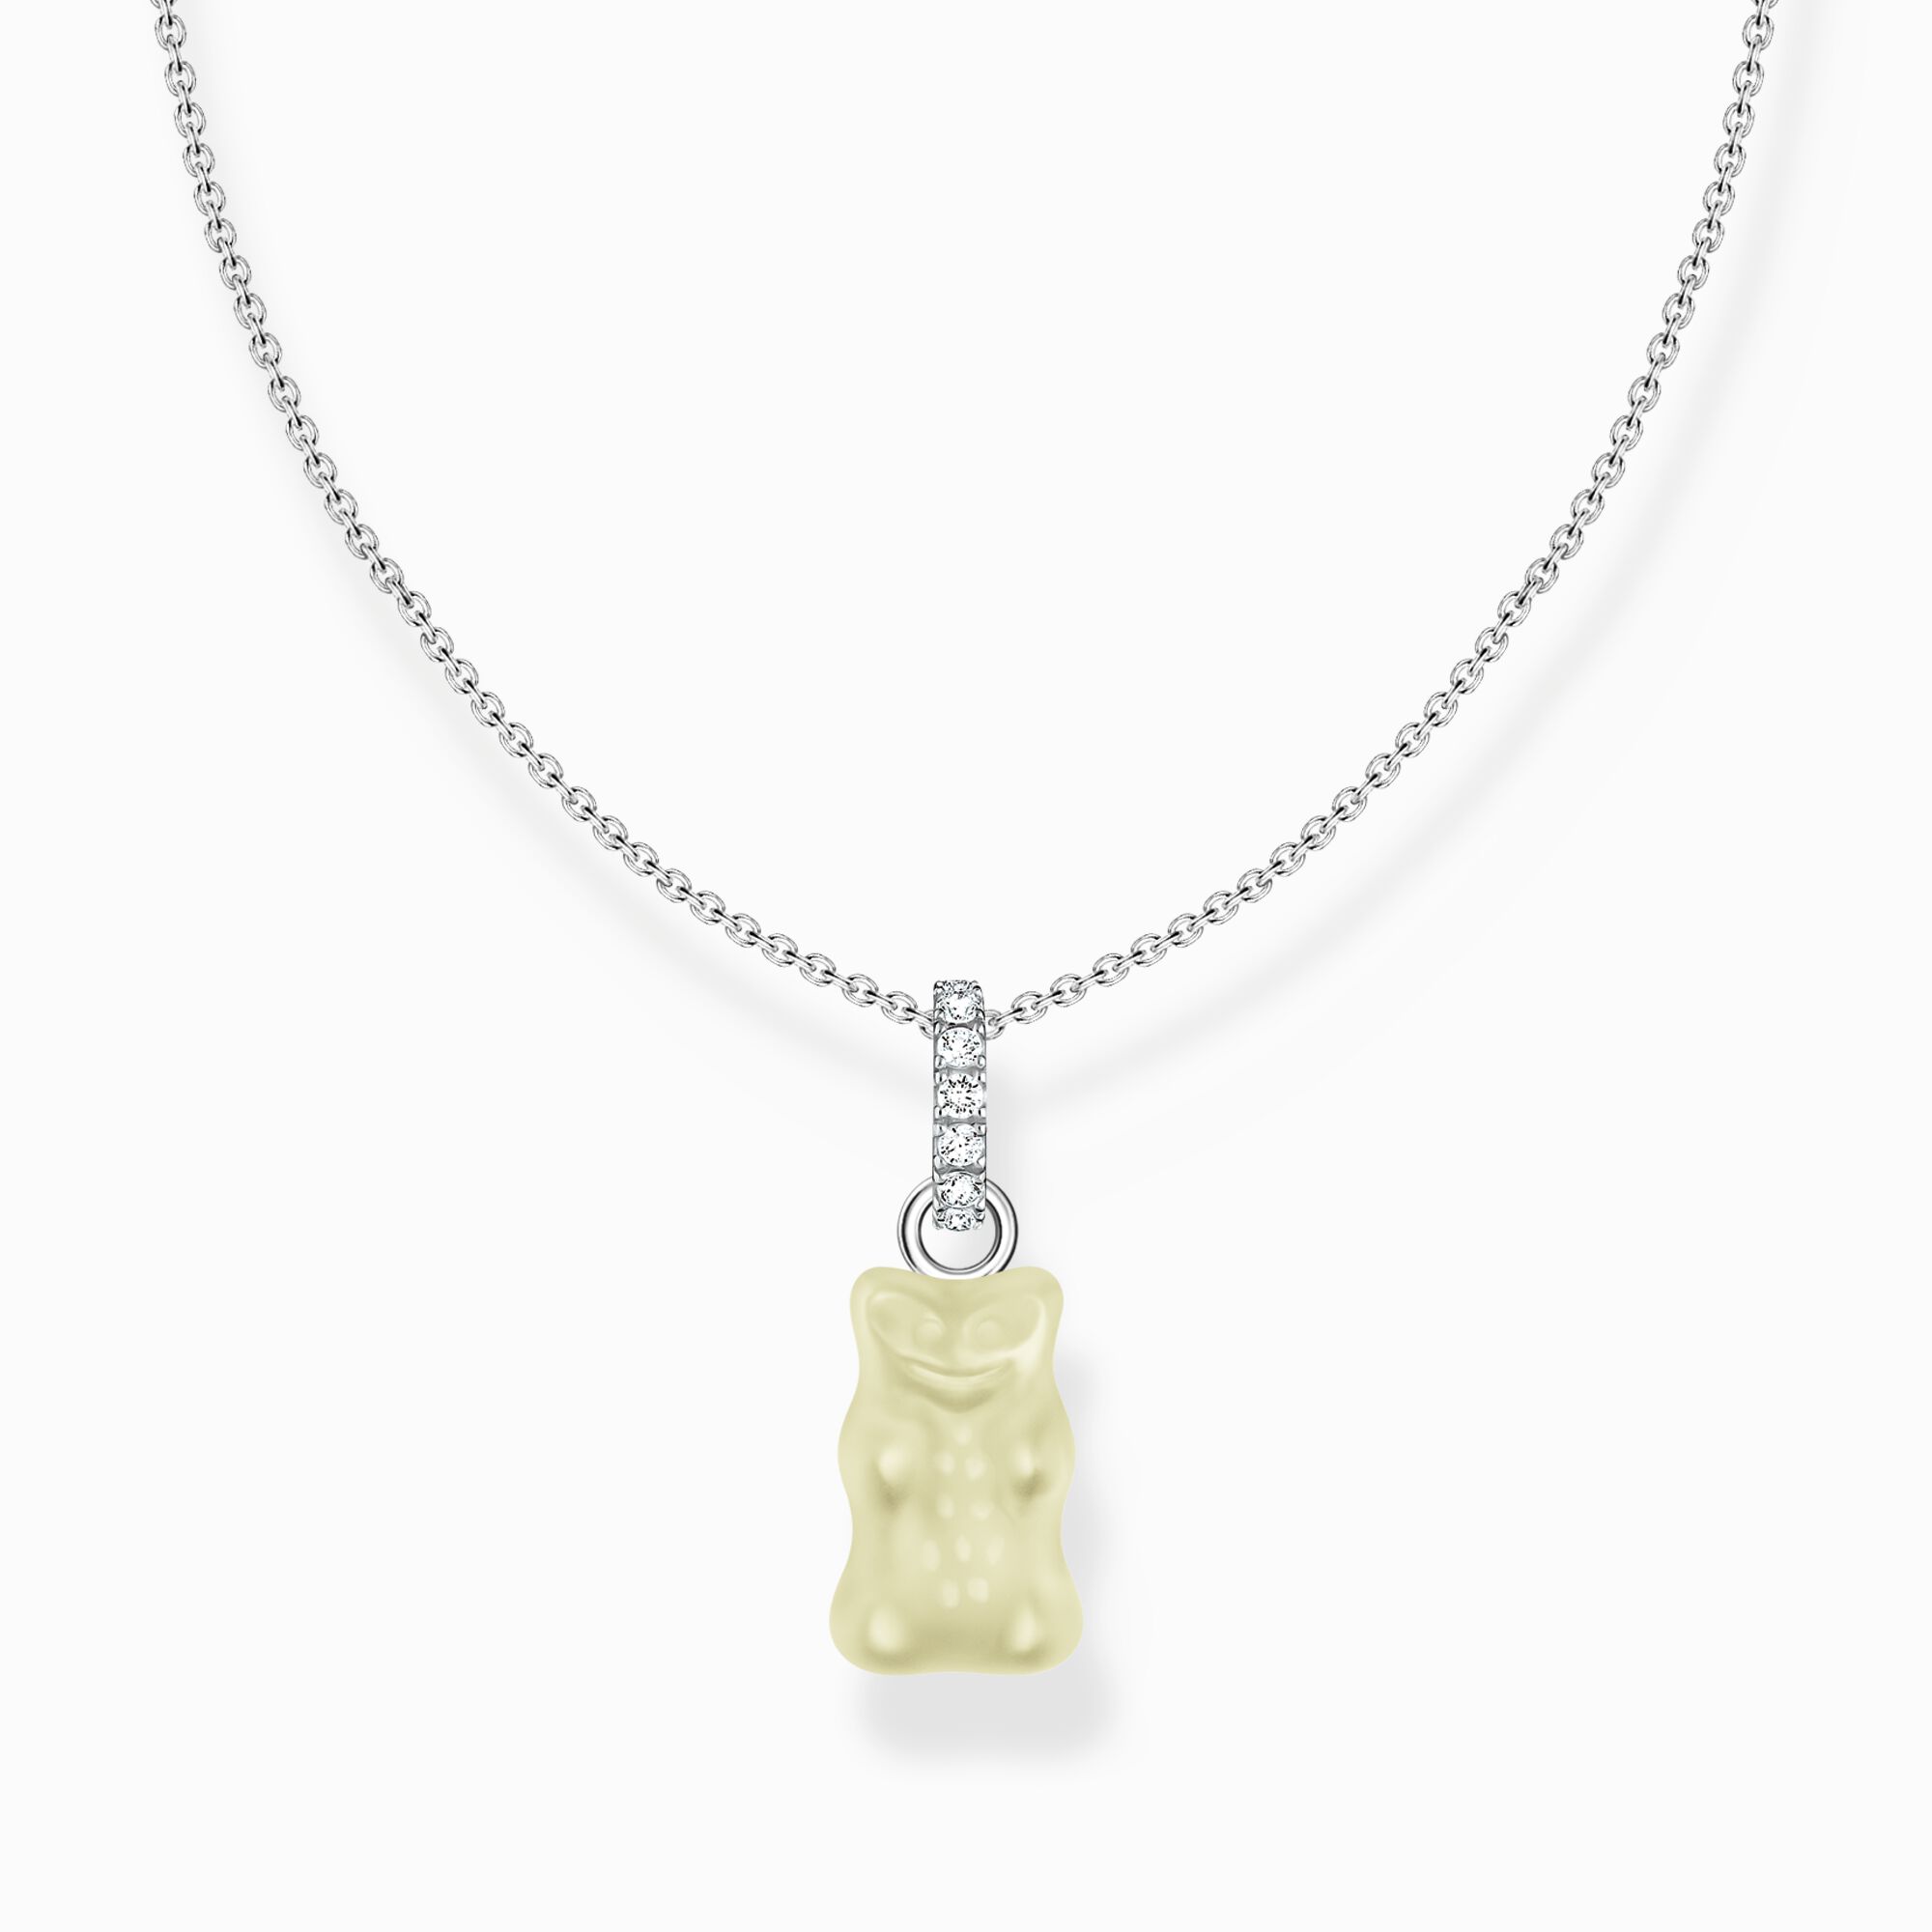 Cadena de plata con colgante de Osito de Oro blanco y piedras de circonita de la colección Charming Collection en la tienda online de THOMAS SABO